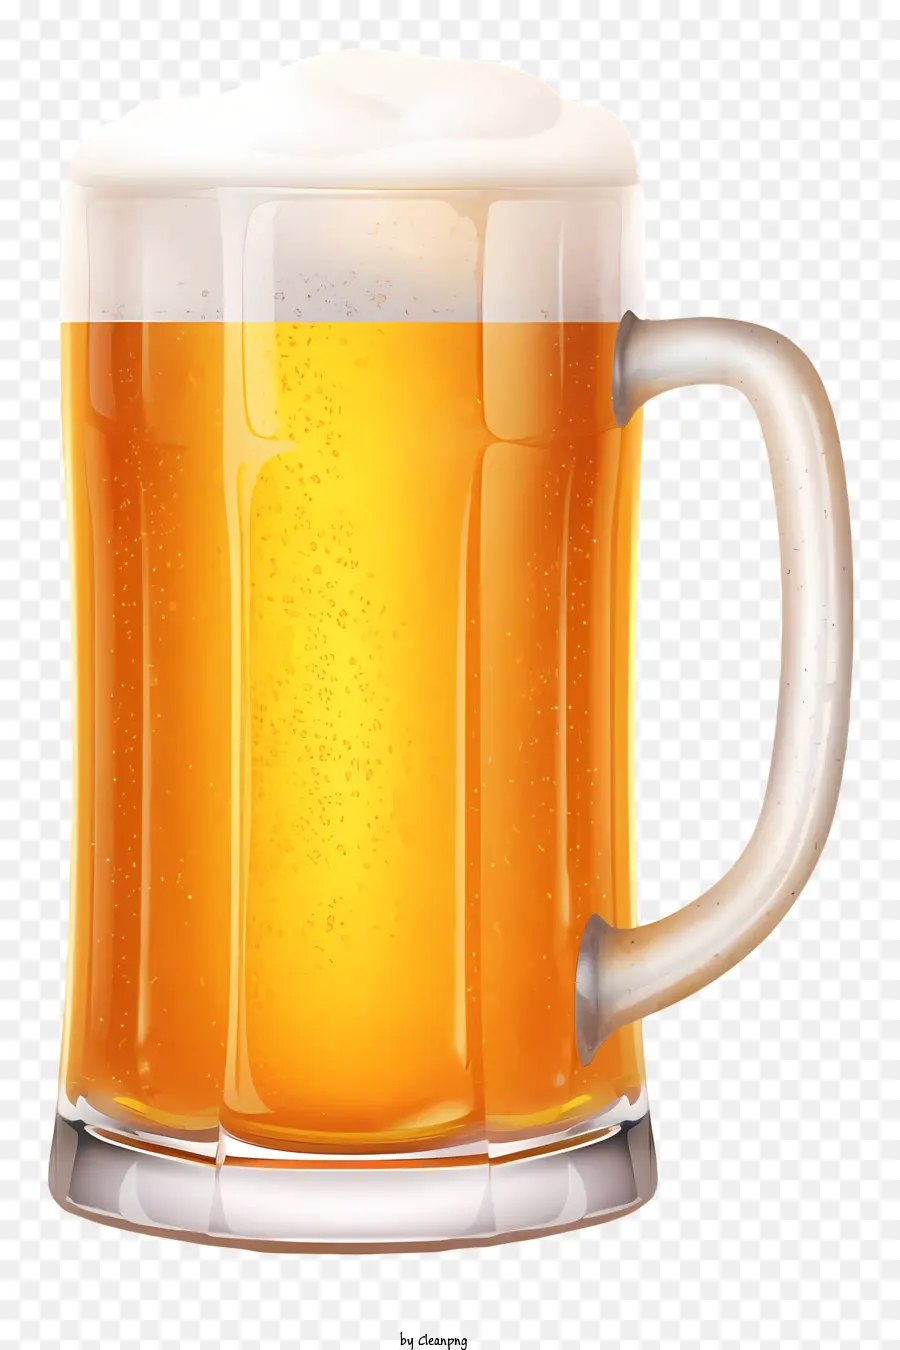 Bia cốc bia Bia Bia vàng Bia không được lọc - Cốc thủy tinh chứa đầy bọt, bia vàng